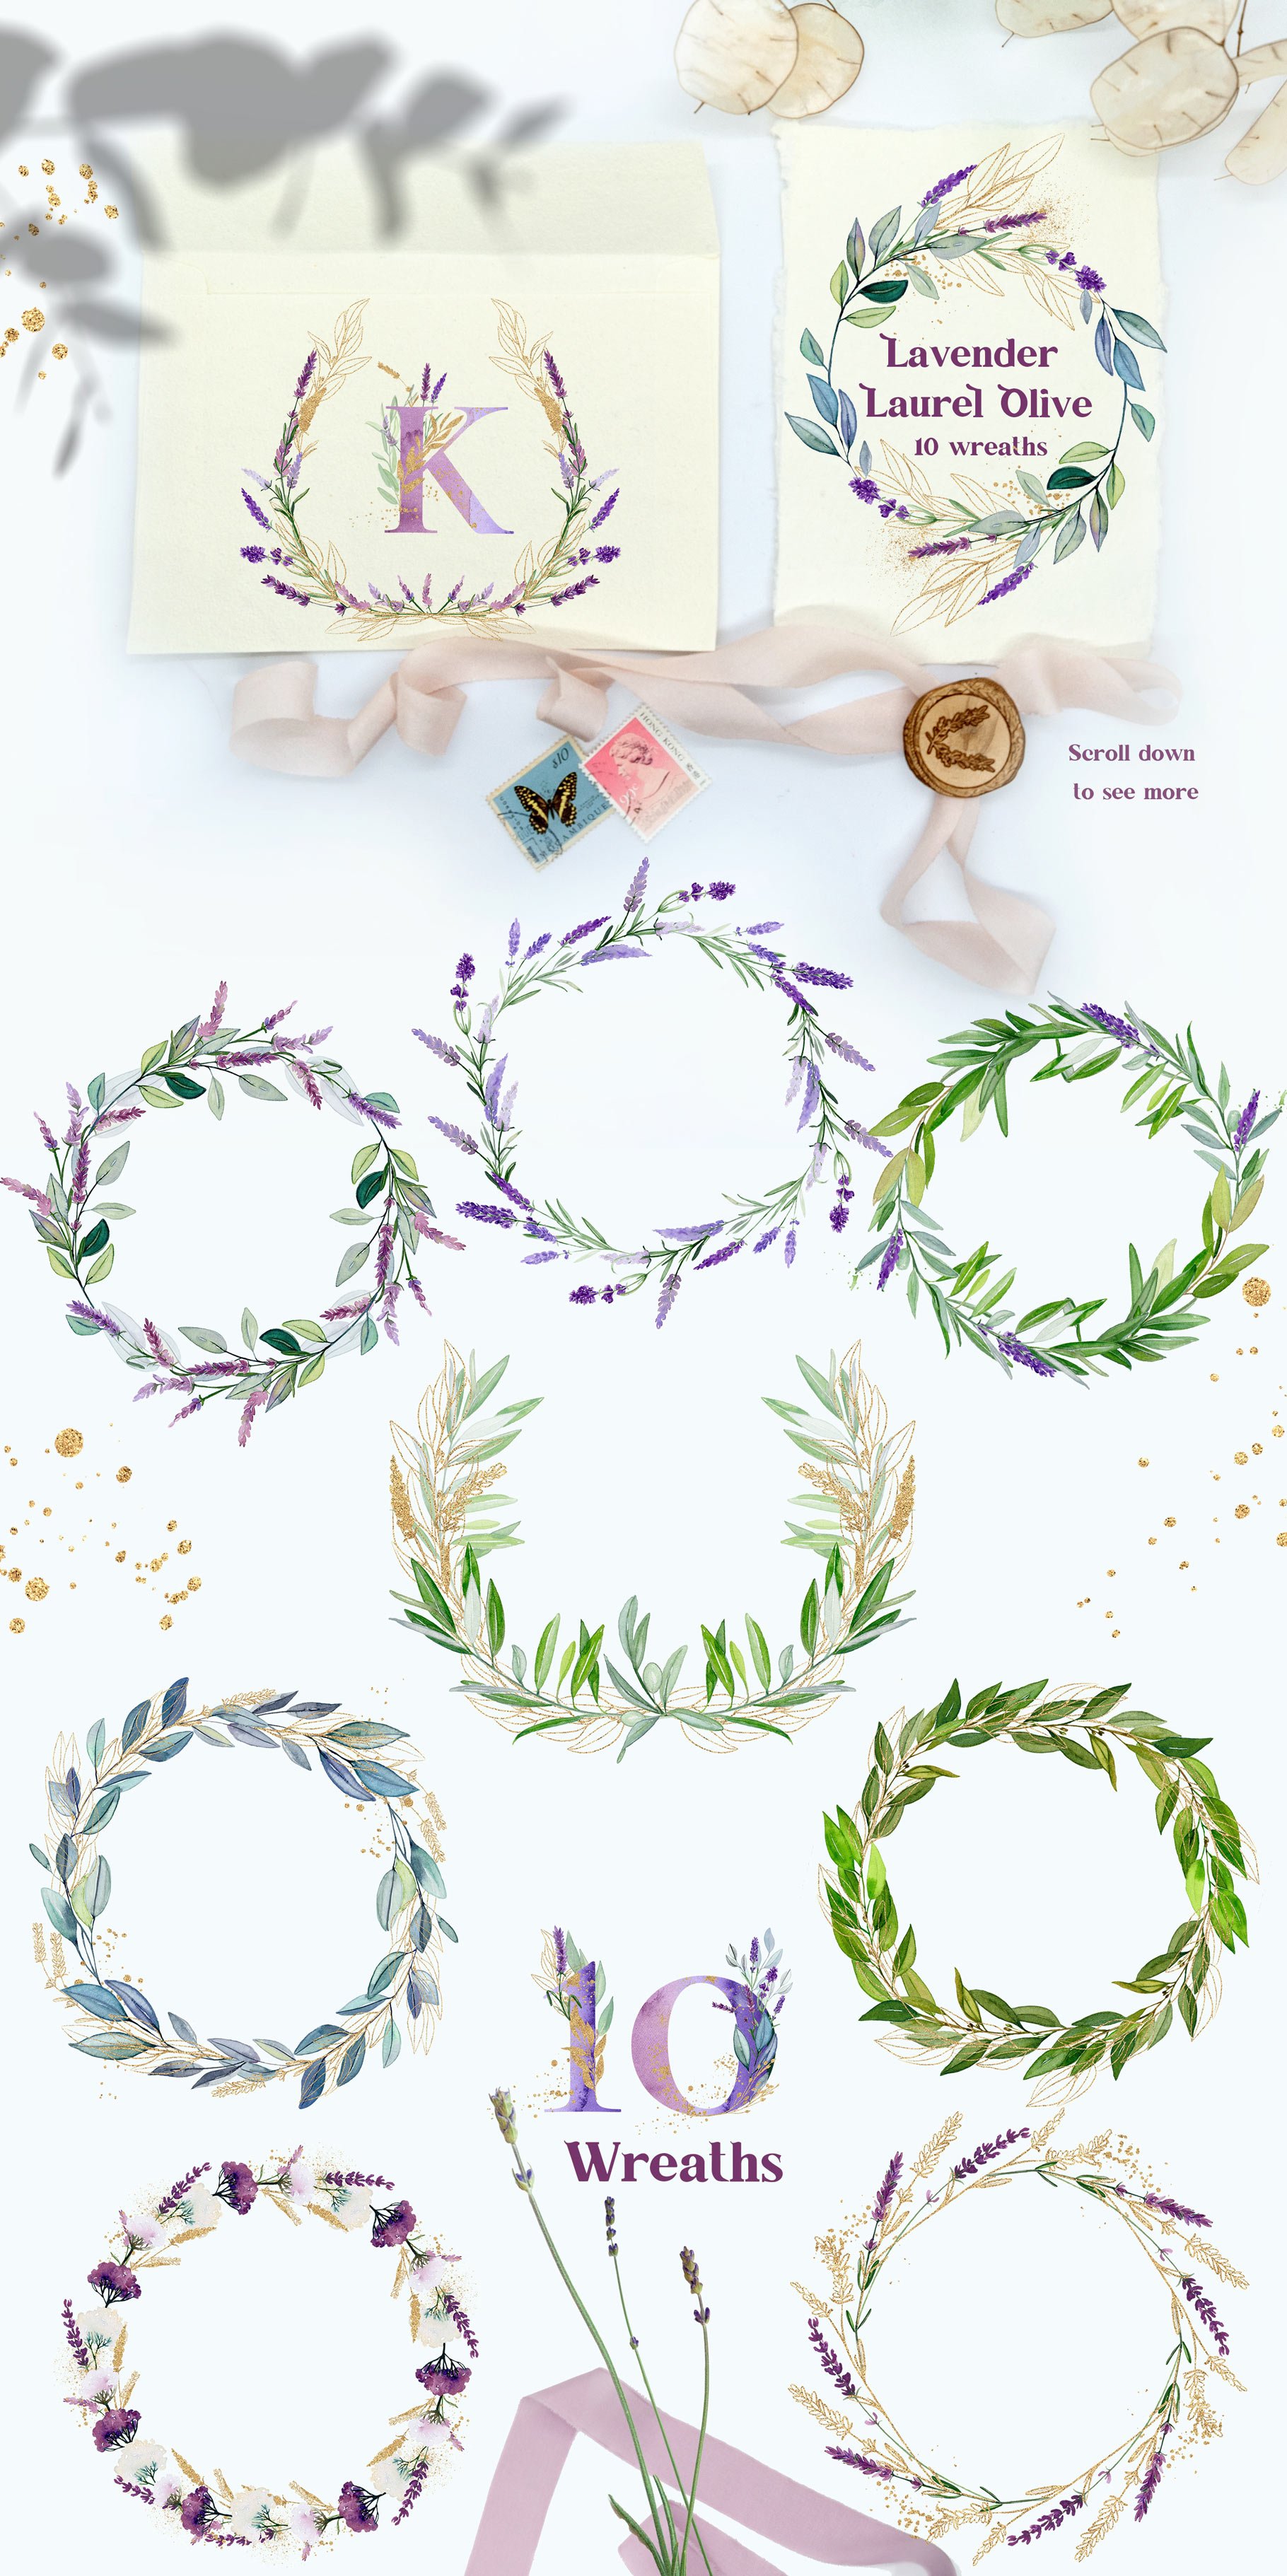 alavender laurel olive presentation wreath 268